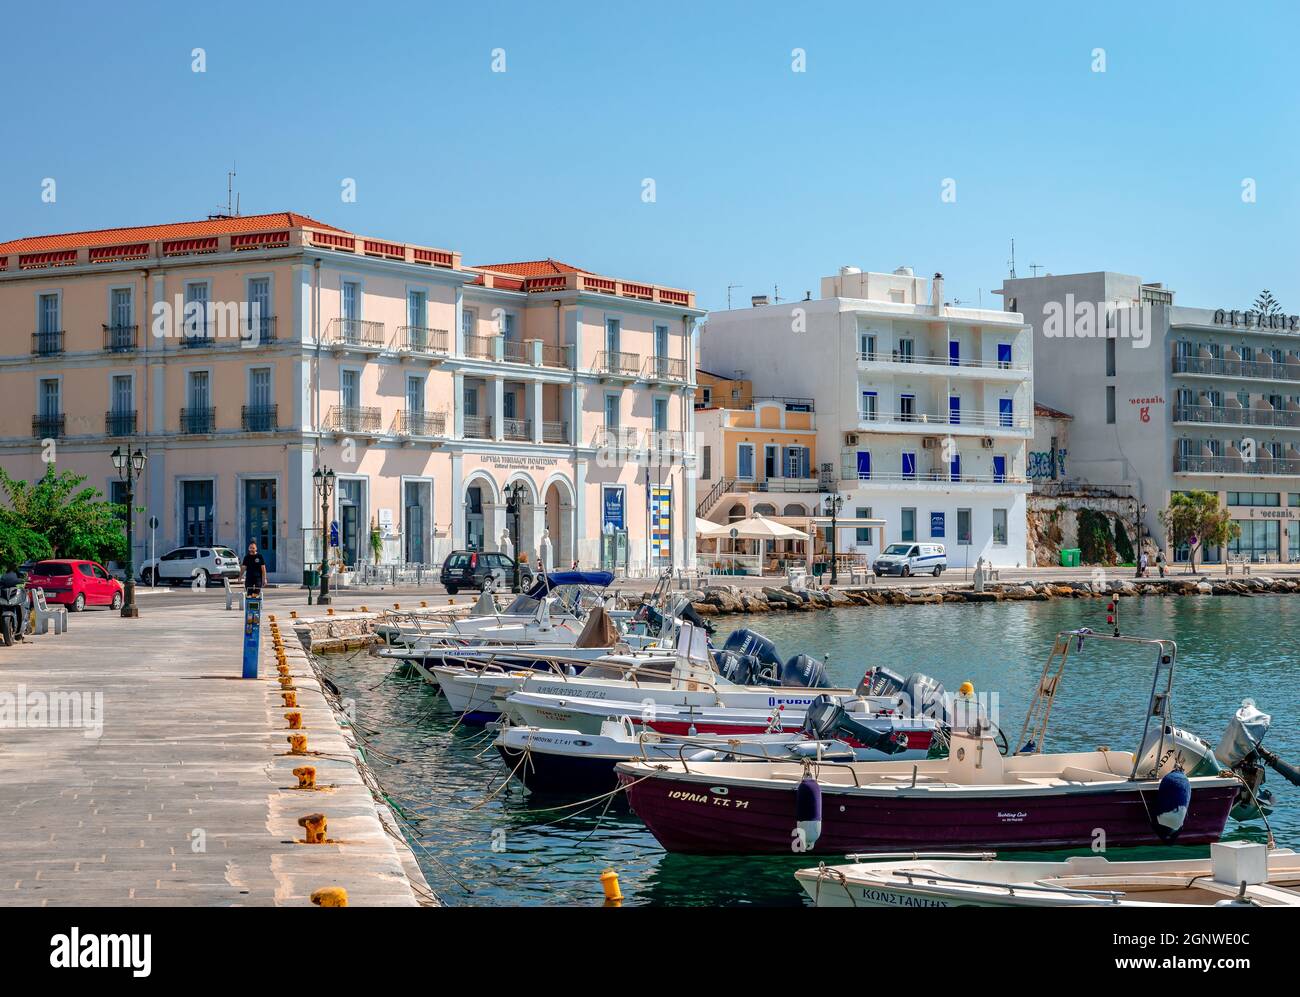 Die Uferpromenade von Tinos mit neoklassizistischen Gebäuden am Meer und vielen Booten, an einem sonnigen Morgen. Tinos ist eine griechische Insel in der Ägäis. Stockfoto